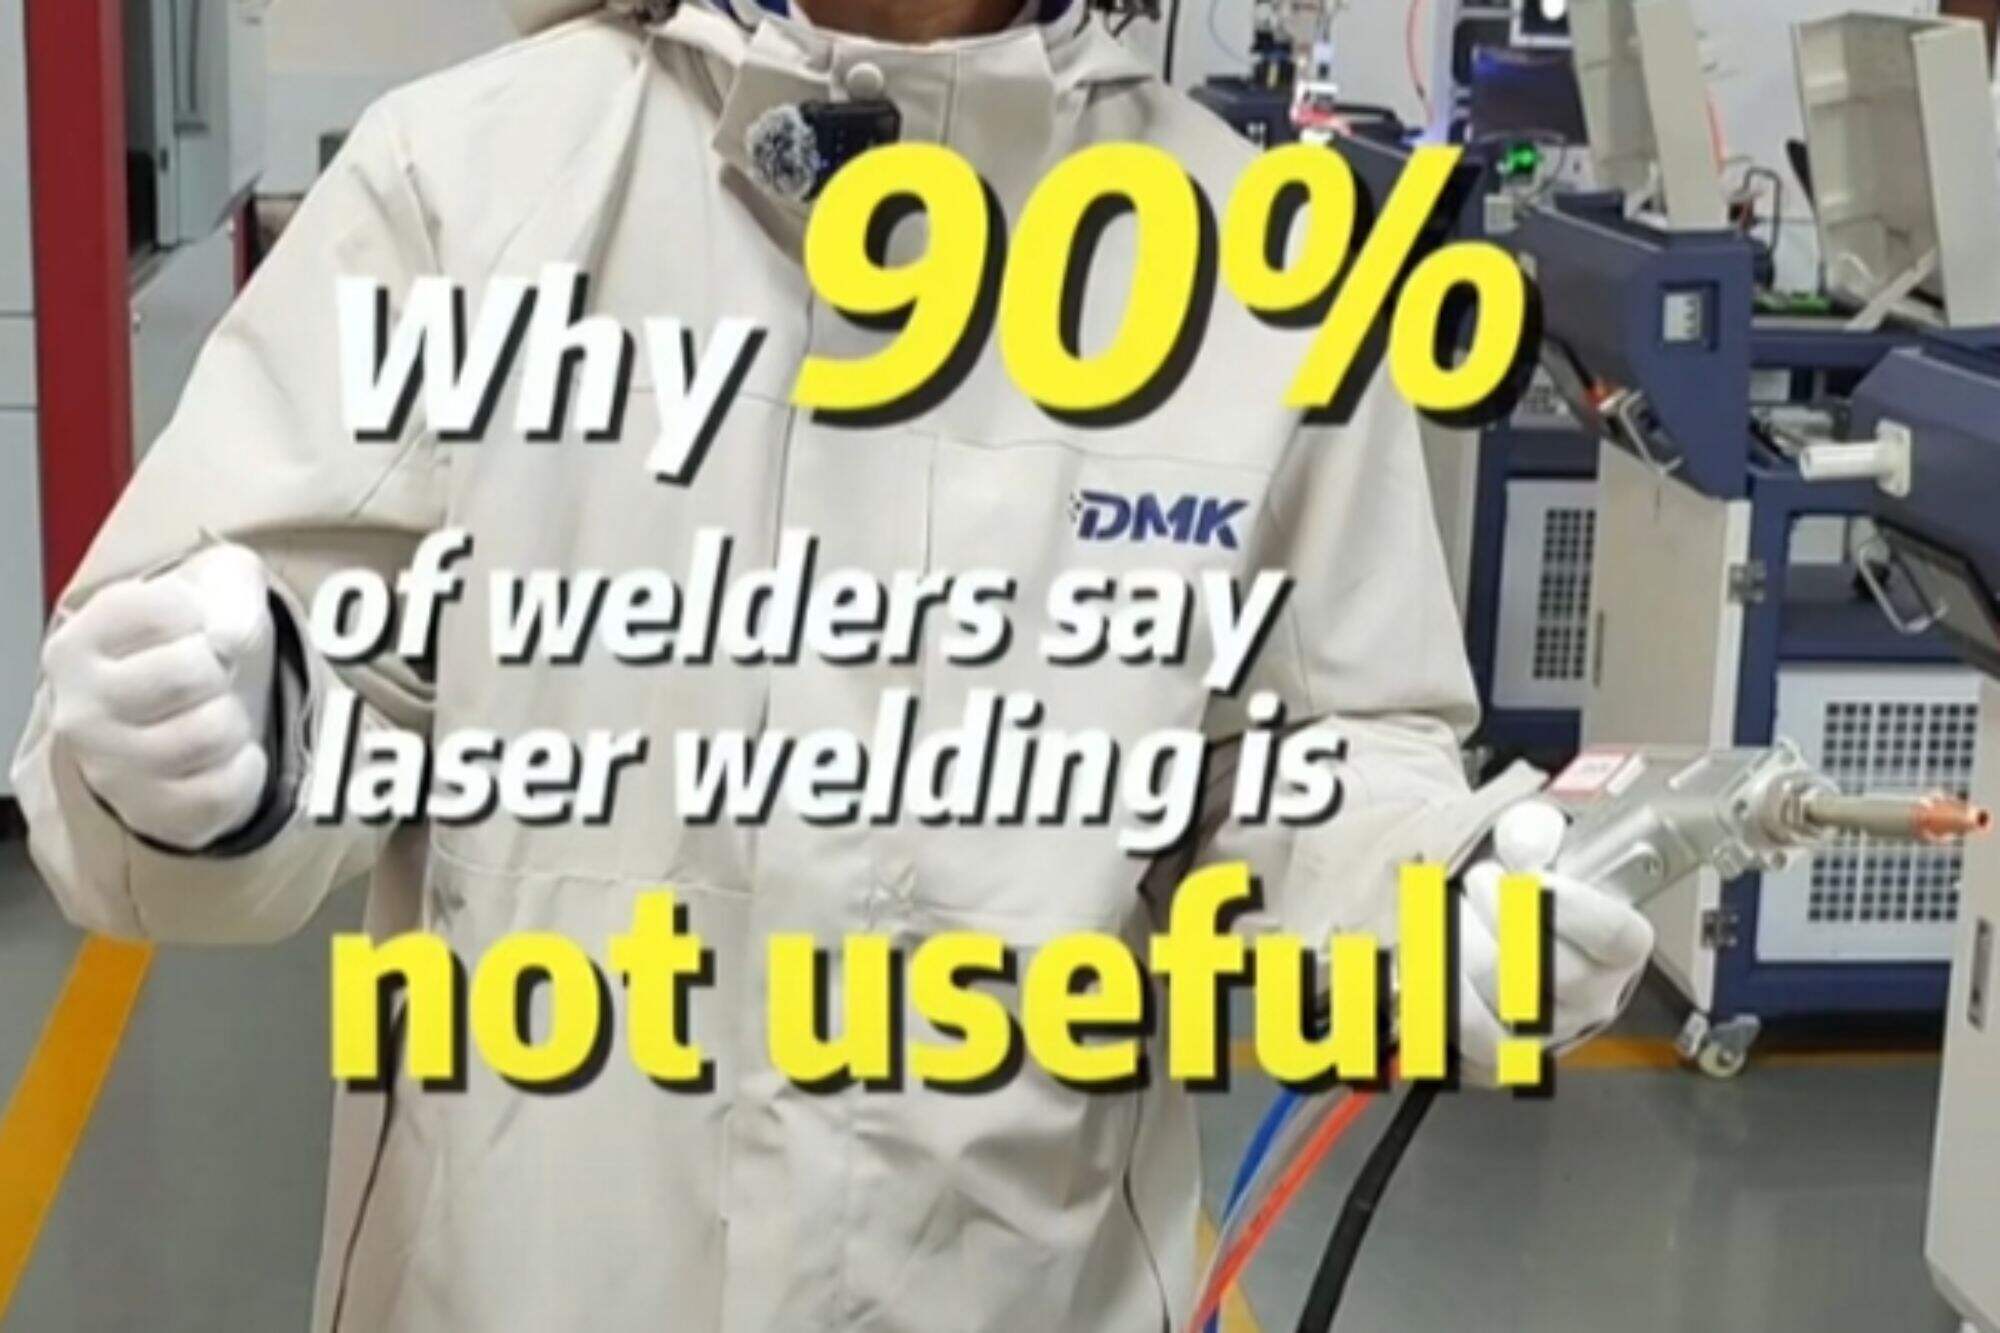 Kaynakçıların %90'ı neden lazer kaynağının kullanışlı olmadığını söylüyor!